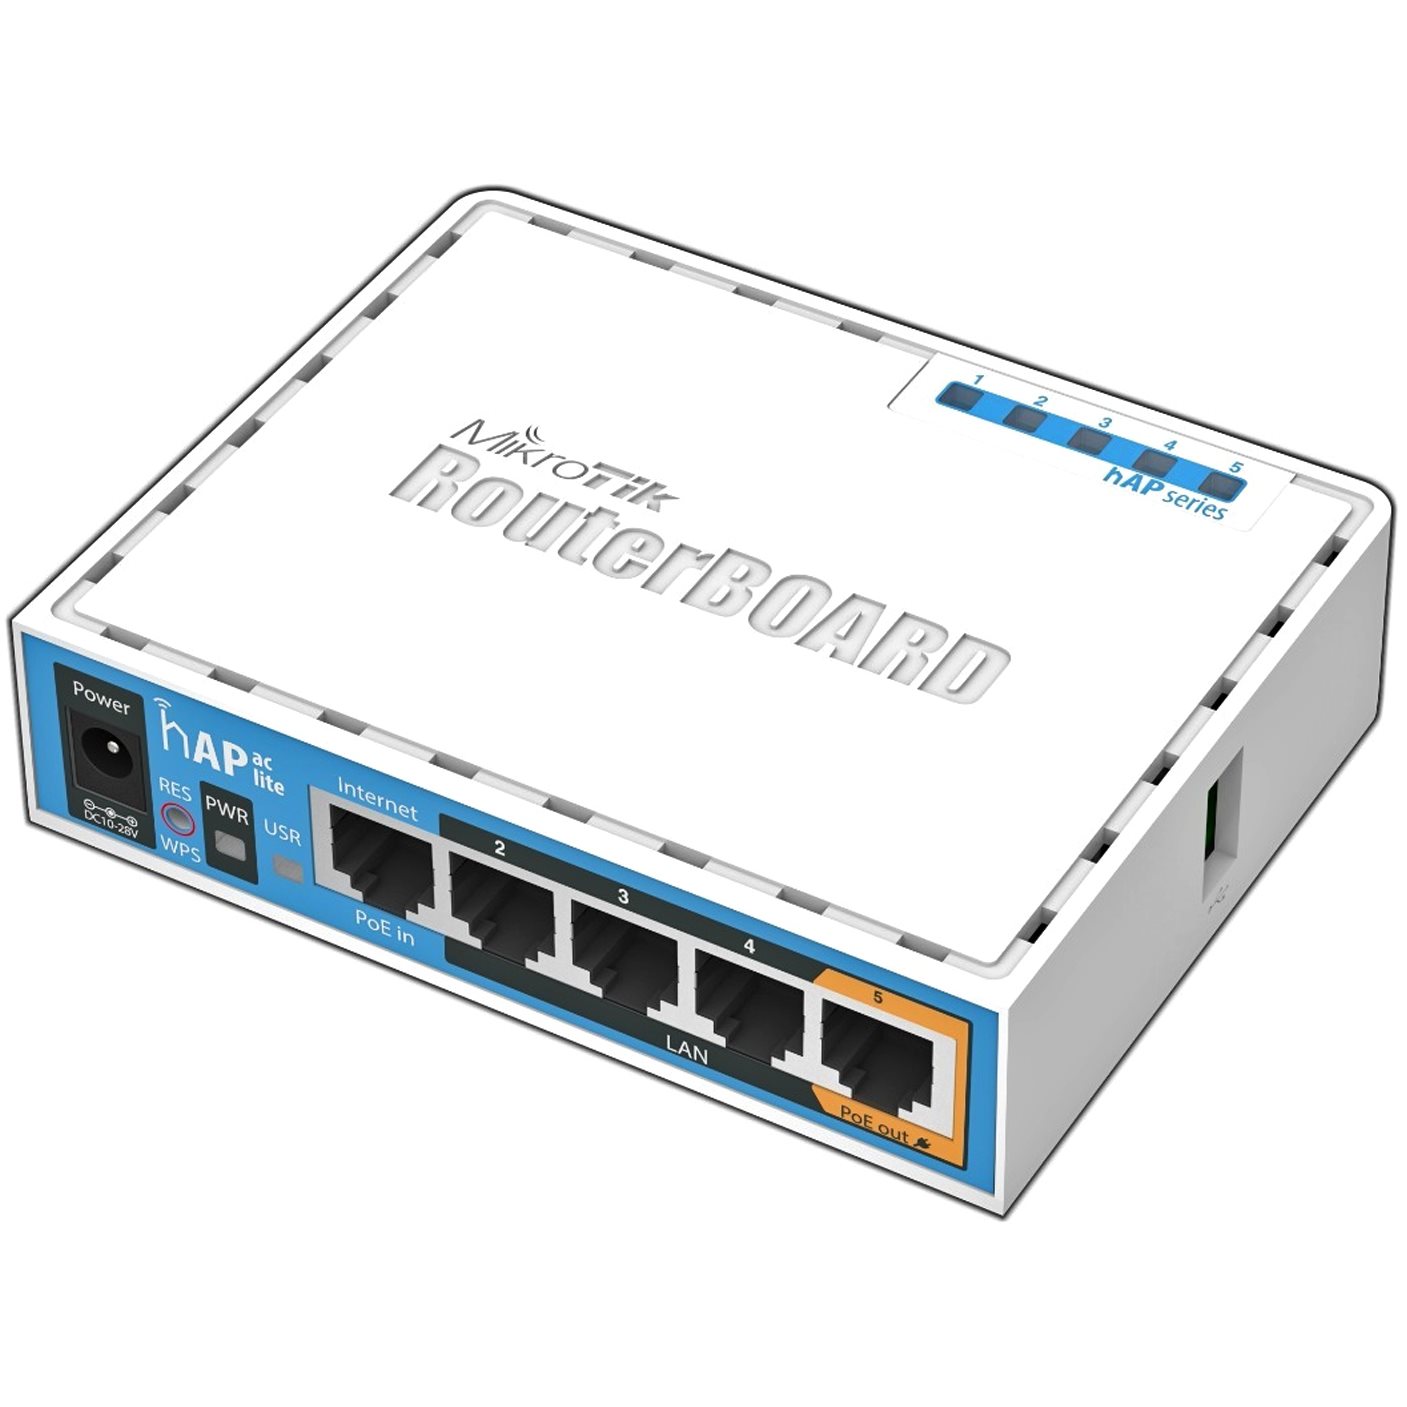   Routeurs Soho   Routeur 5 ports (1 PoE) + Wifi ac hAP USB (3G) RB952UI-5AC2ND